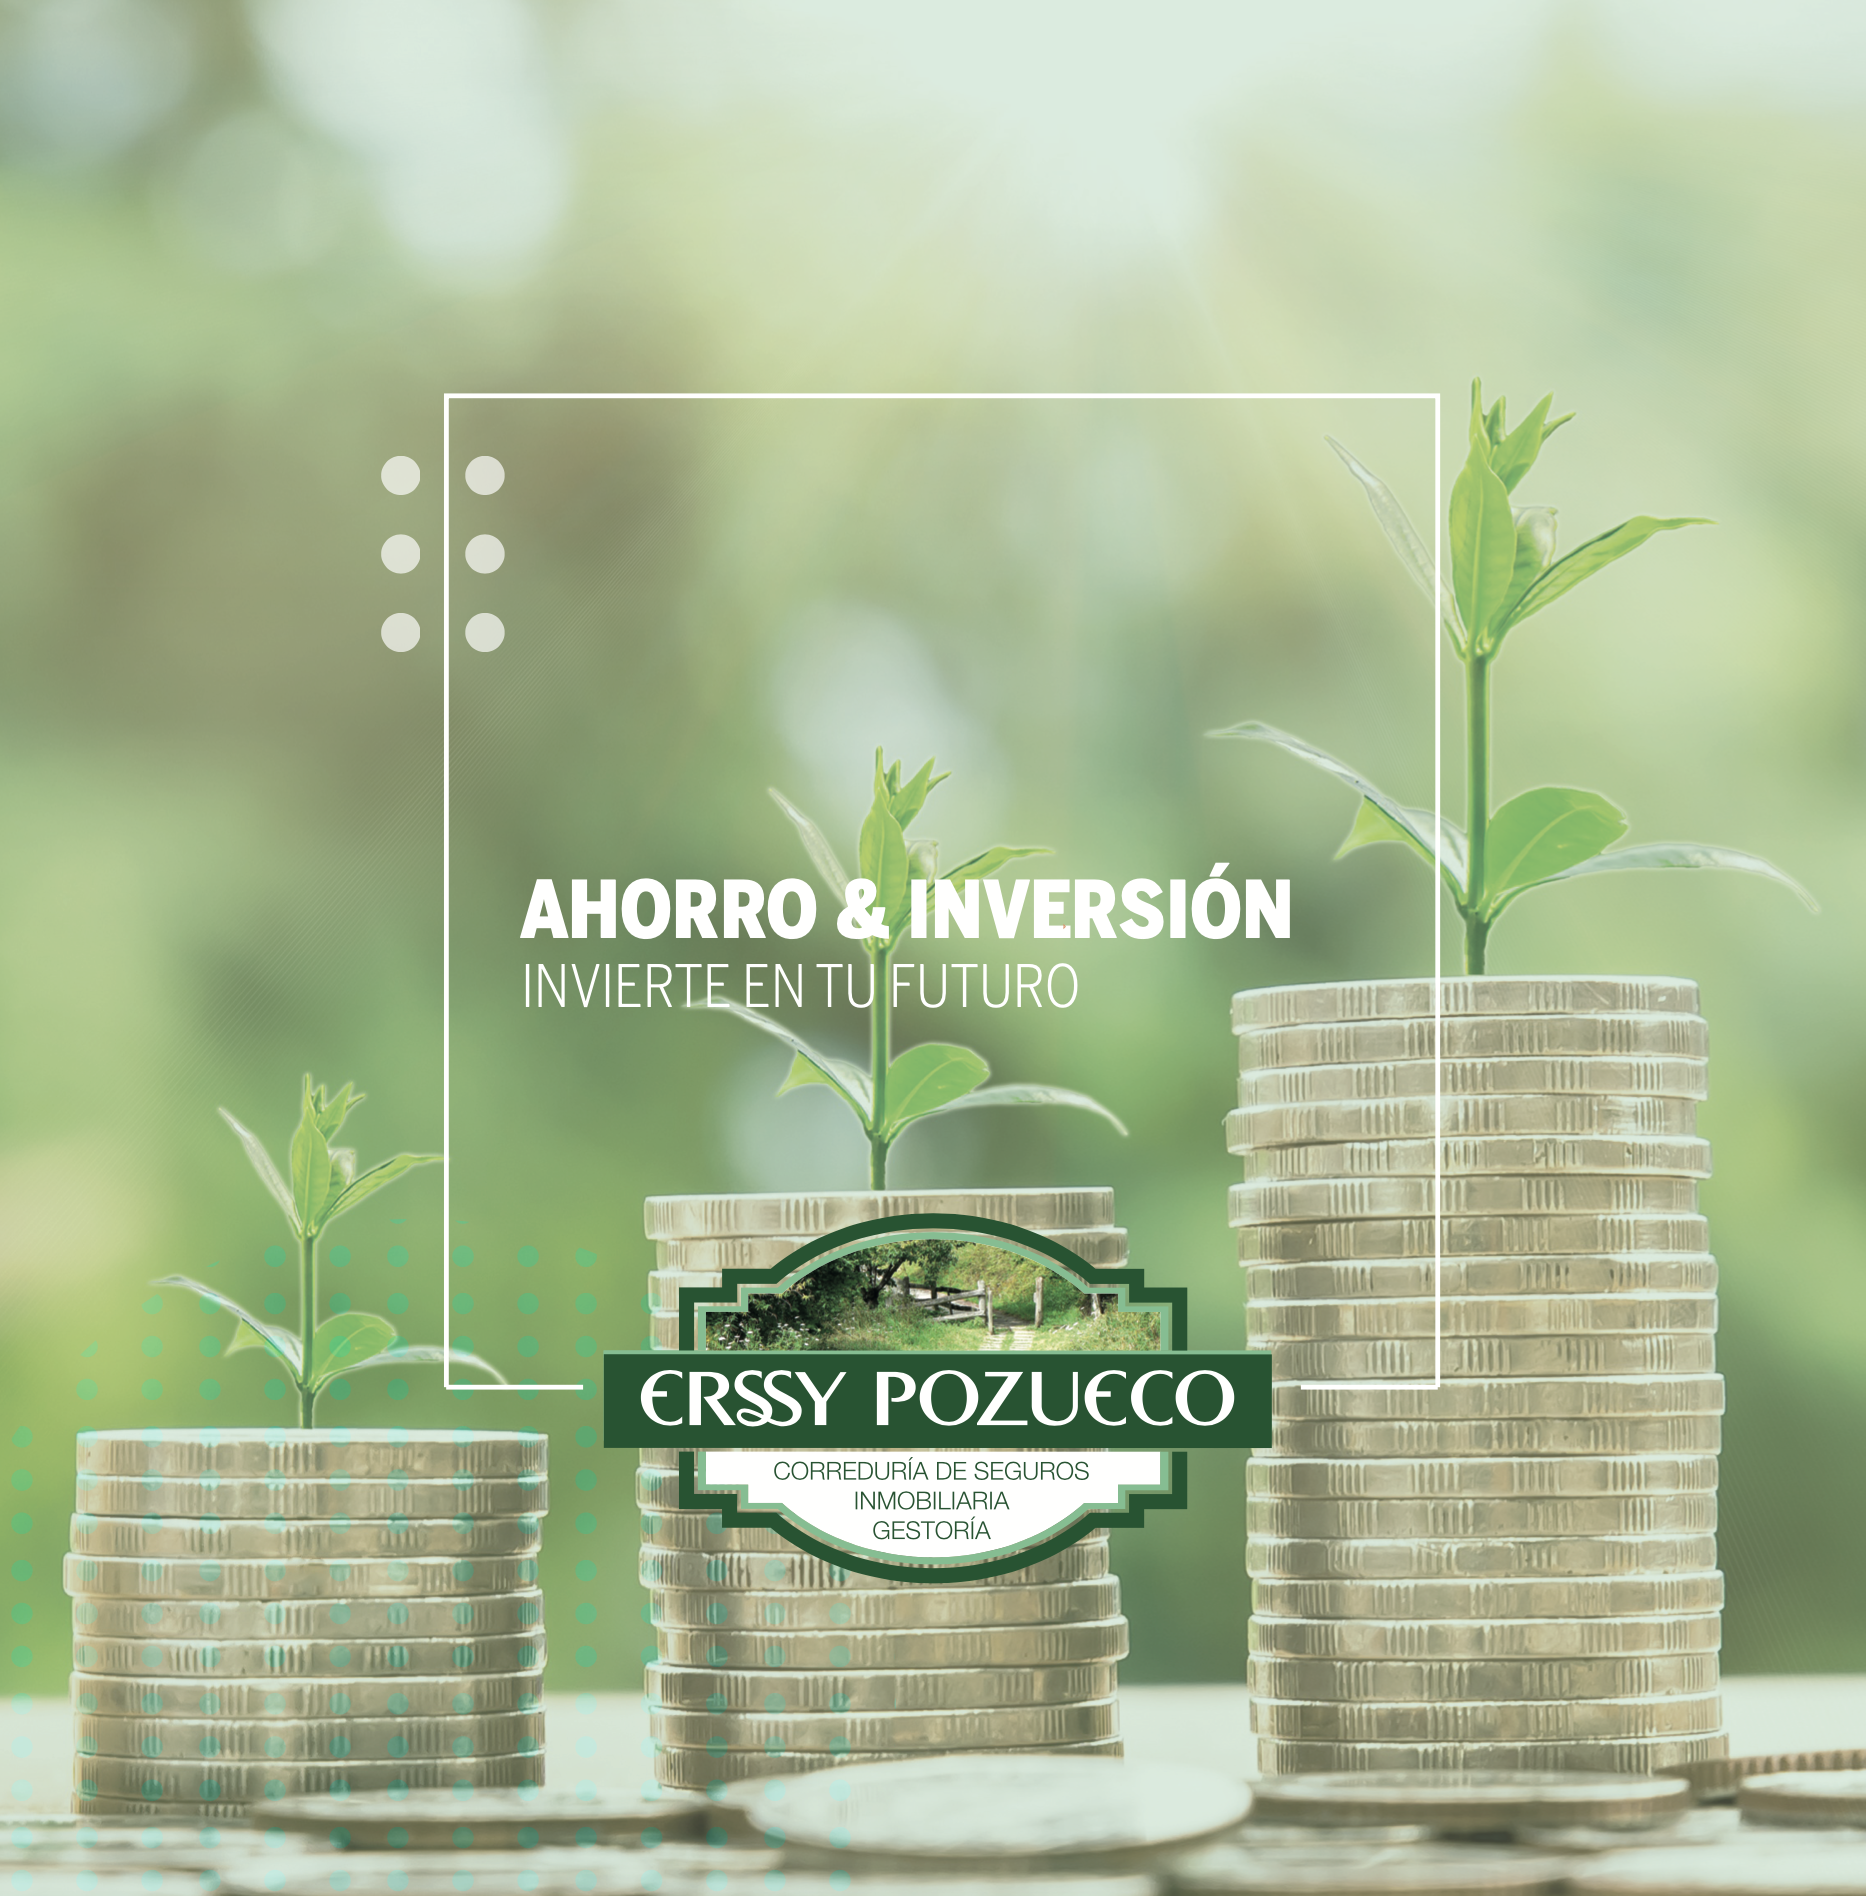 Guía Ahorro & Inversión Erssy Pozueco